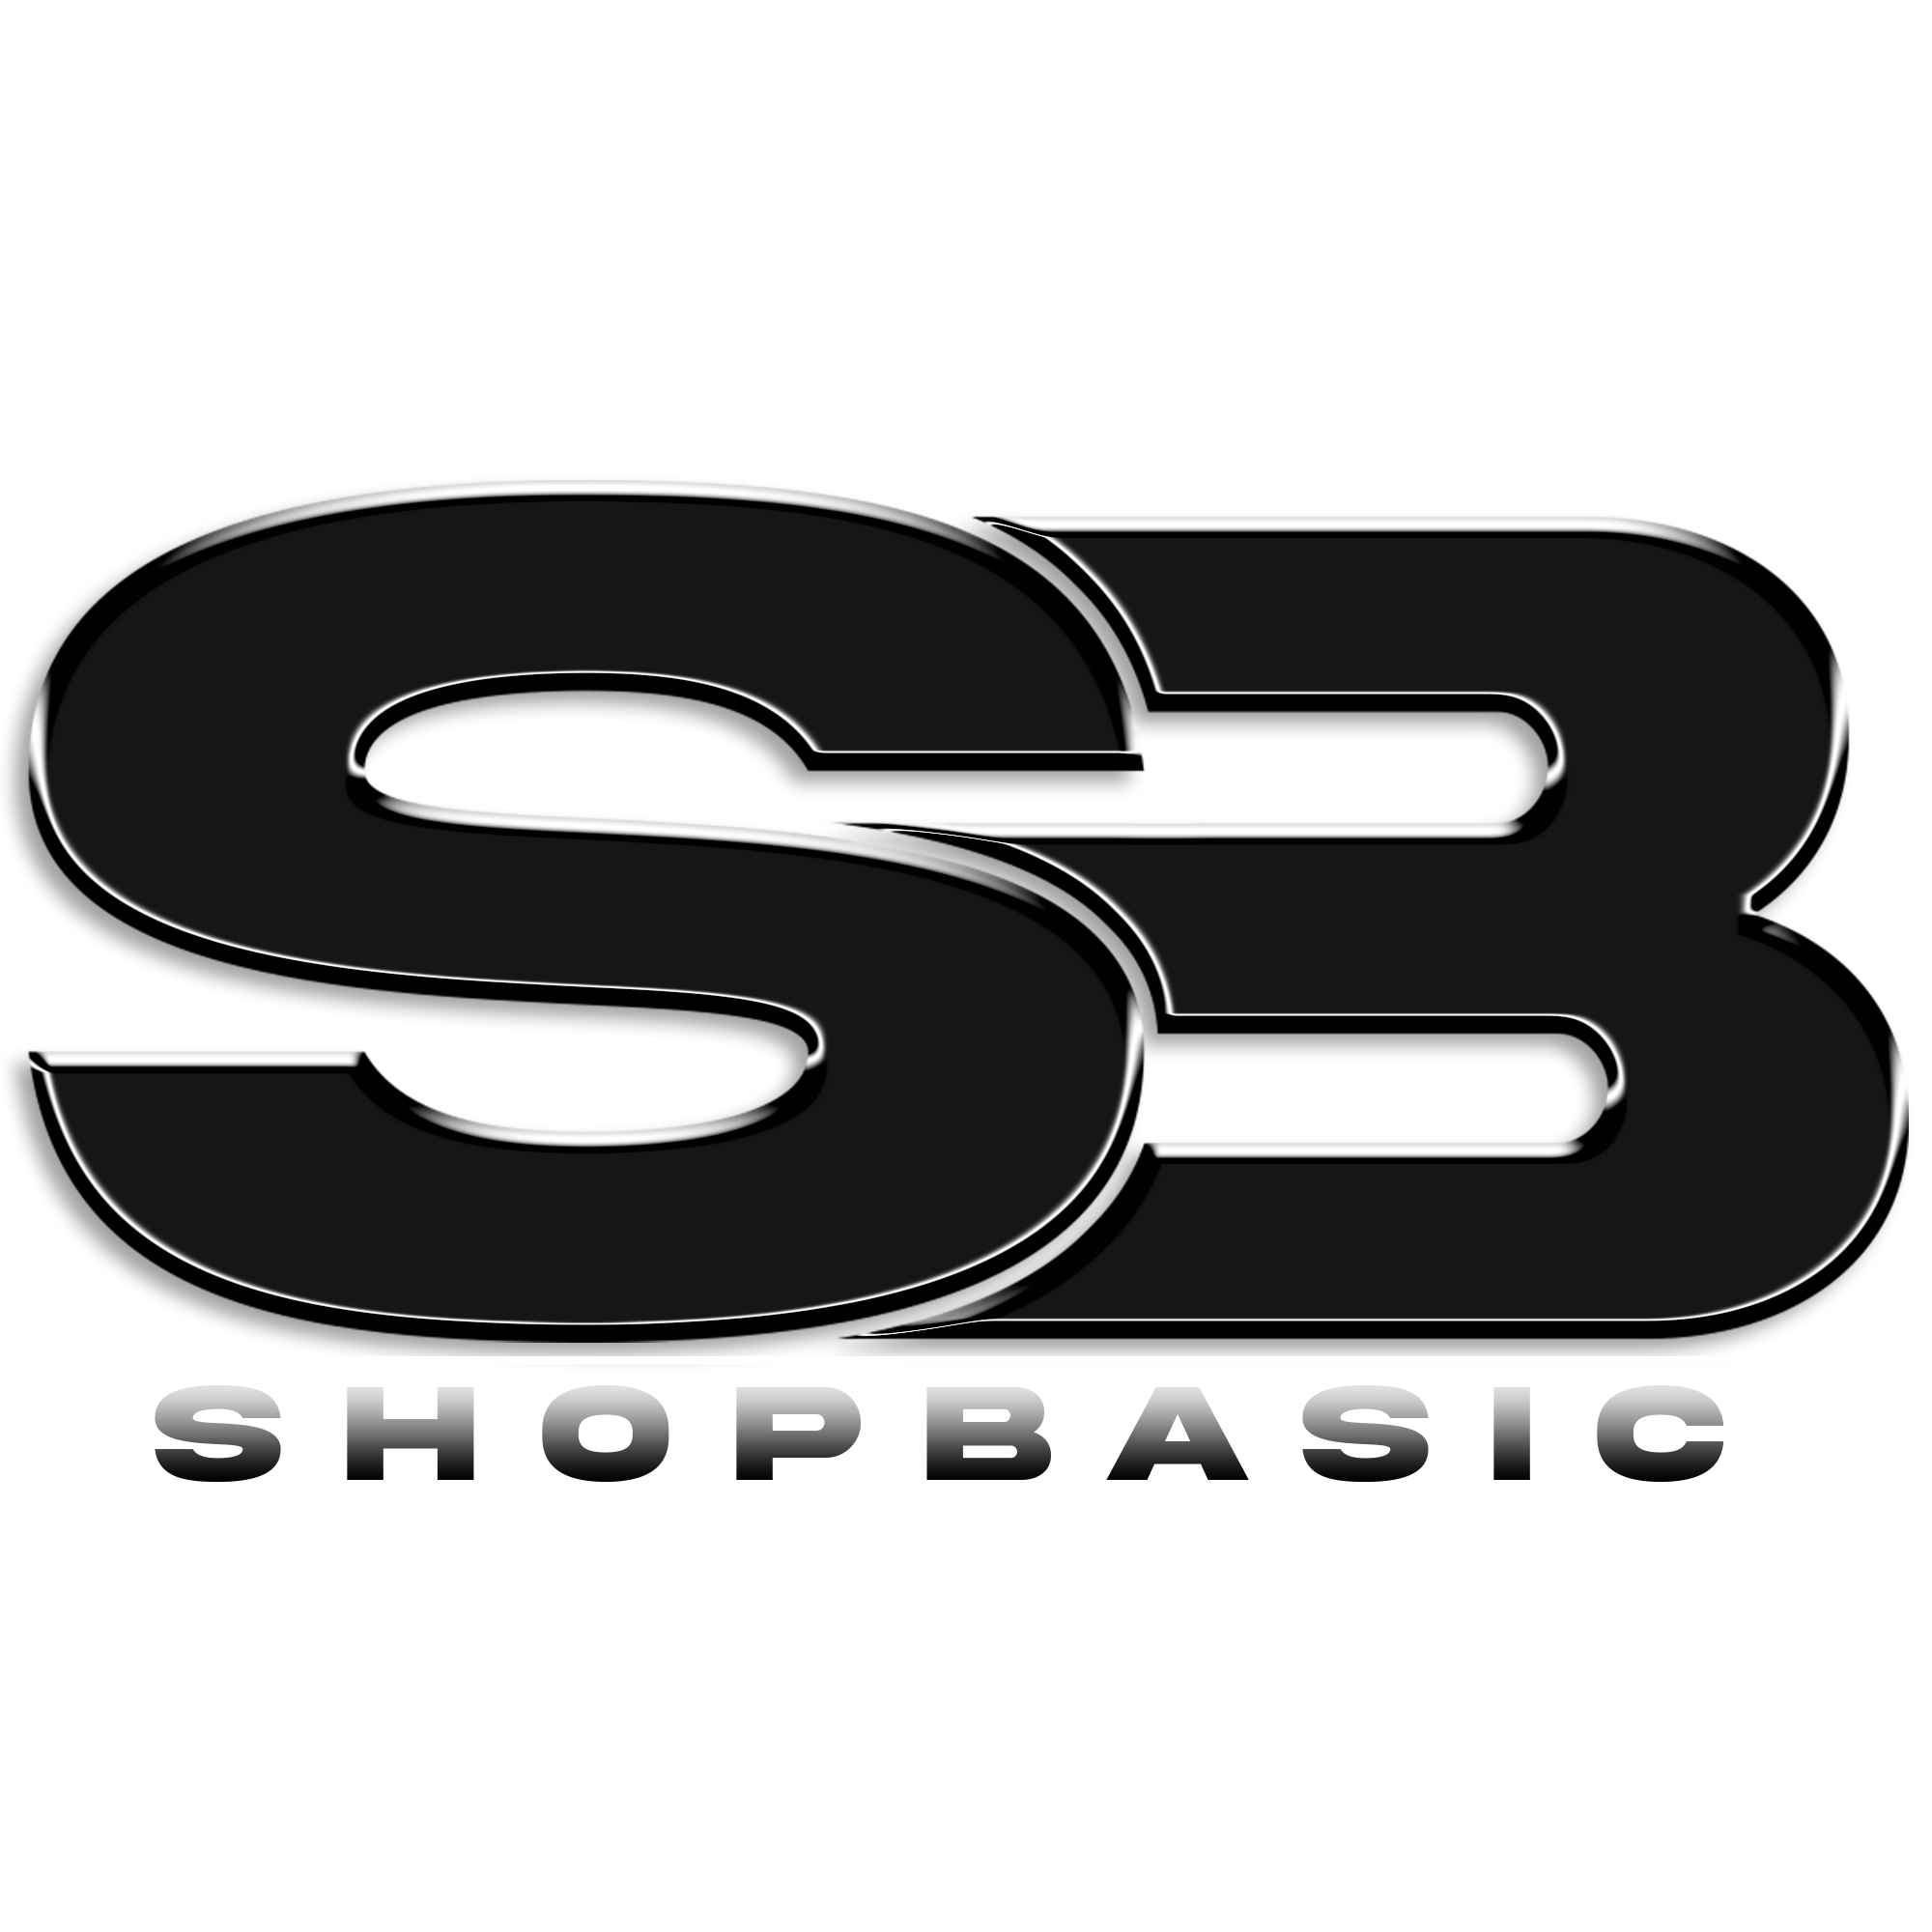 ShopBasic– shopbasiconline